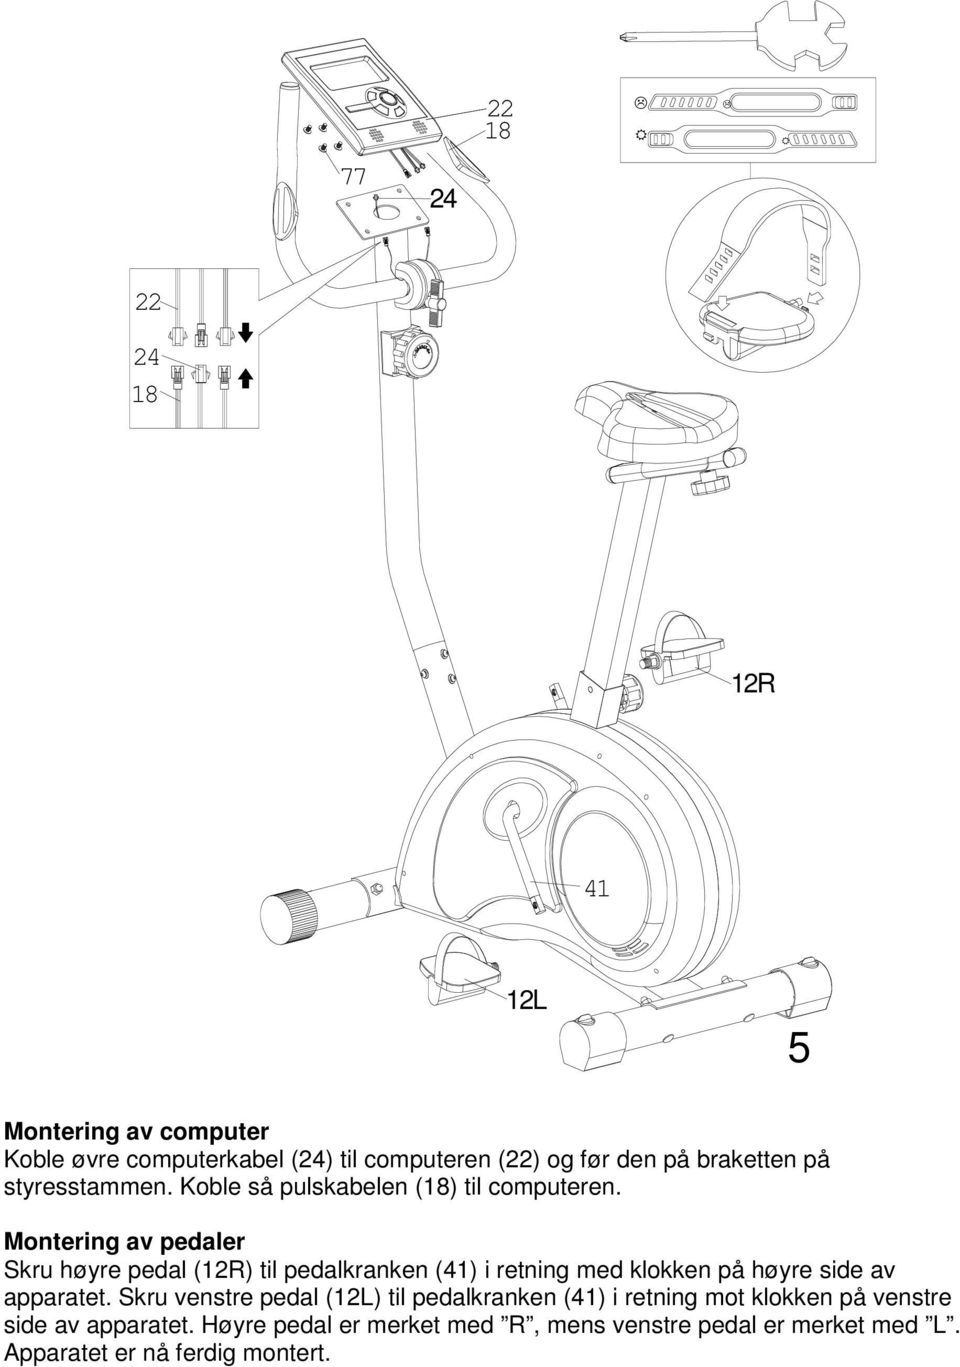 Montering av pedaler Skru høyre pedal (12R) til pedalkranken (41) i retning med klokken på høyre side av apparatet.